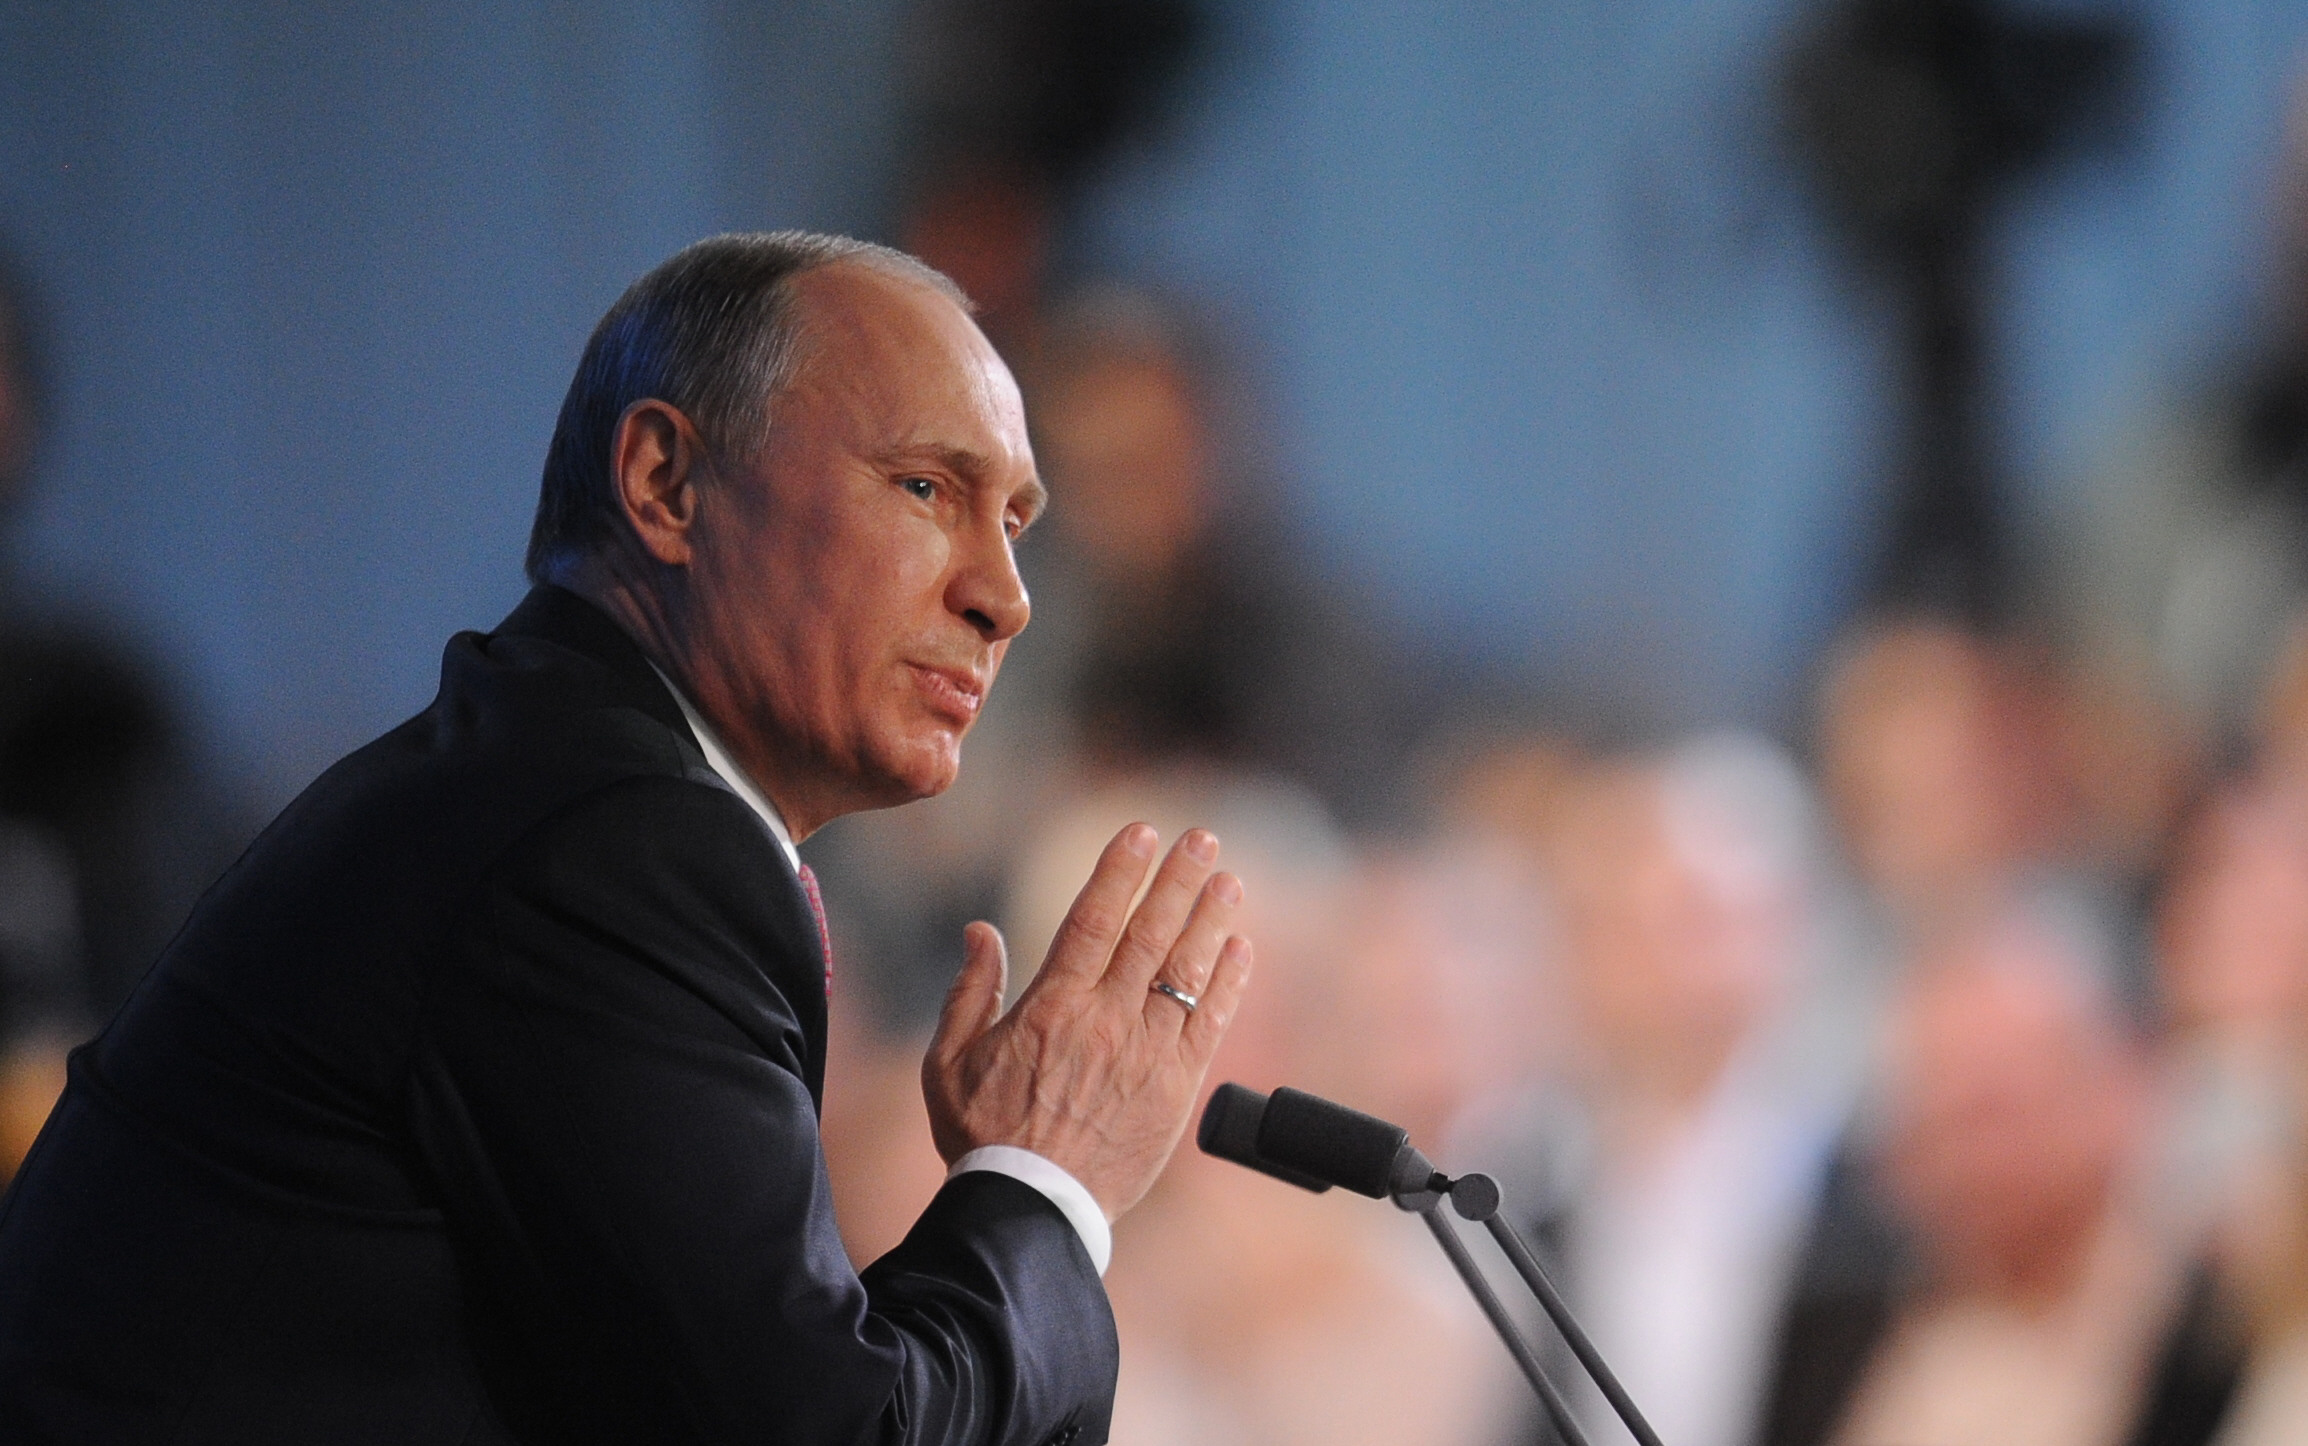 El presidente ruso, Vladímir Putin, hizo las declarciones durante una reunión con miembros de su administración. Fuente: ITAR-TASS.